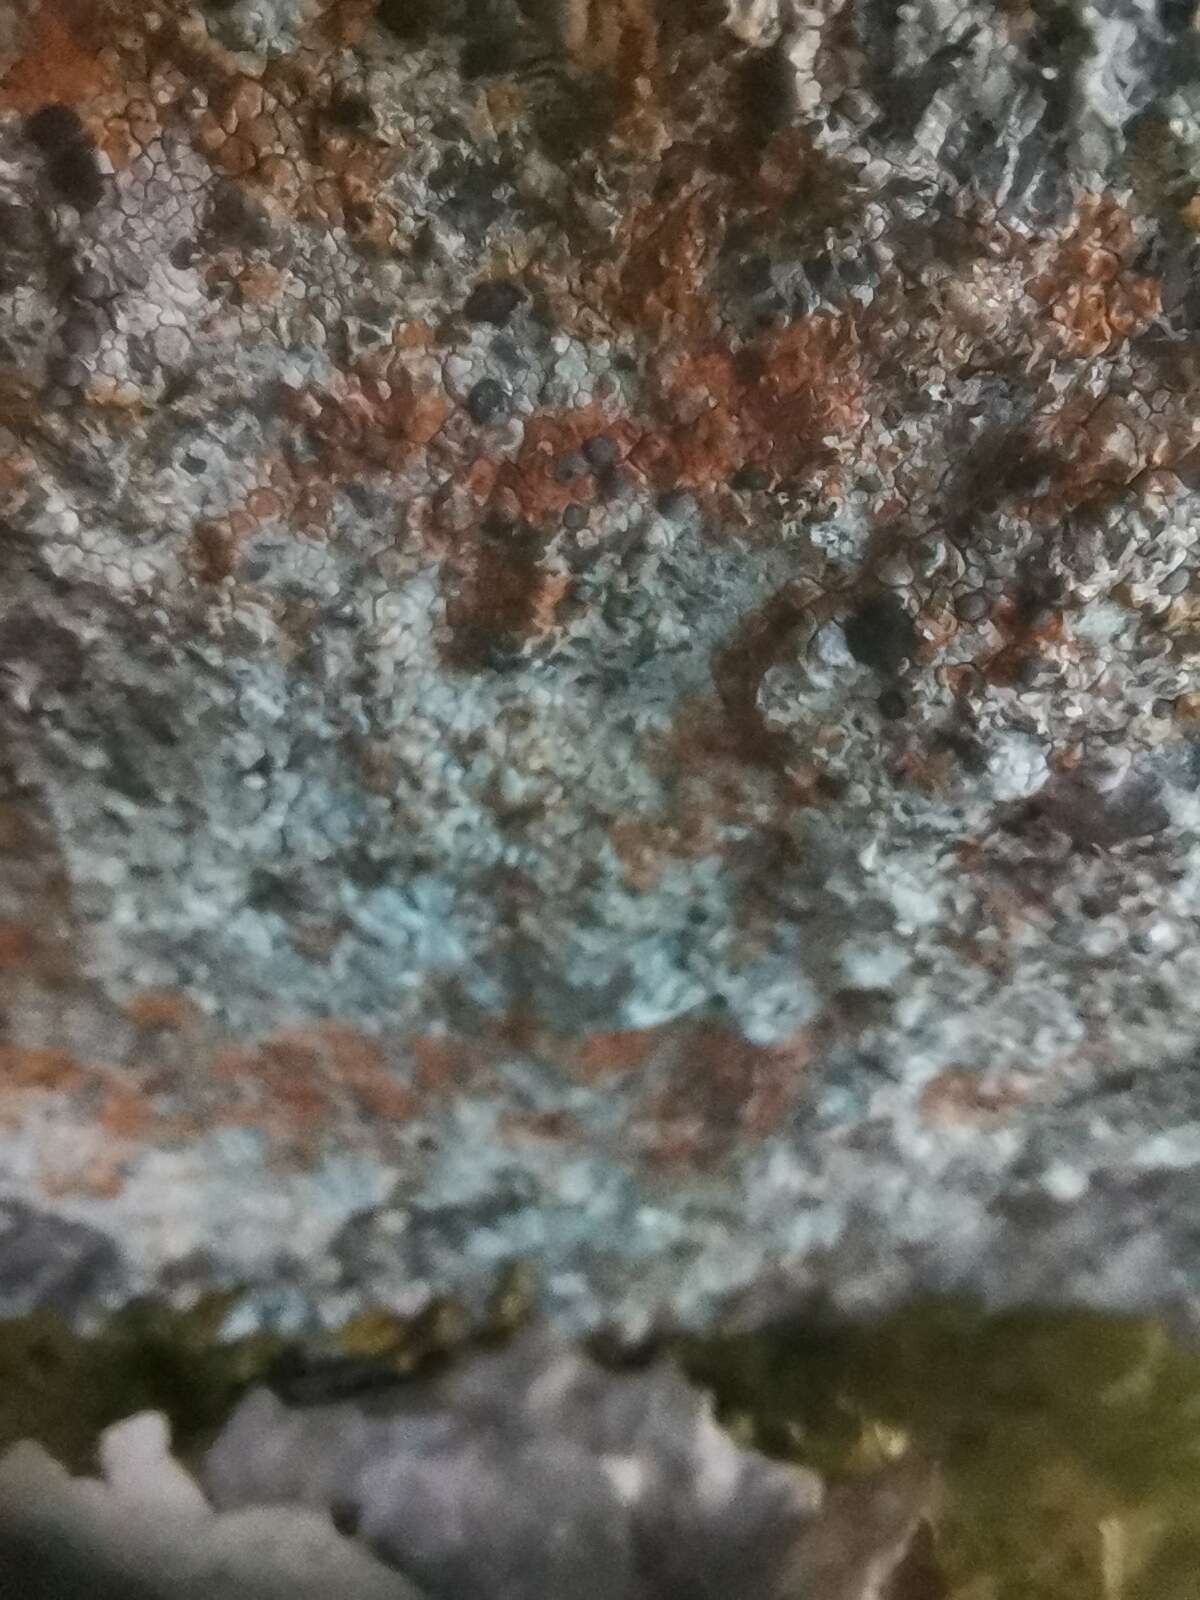 Image of rockloving lecidea lichen